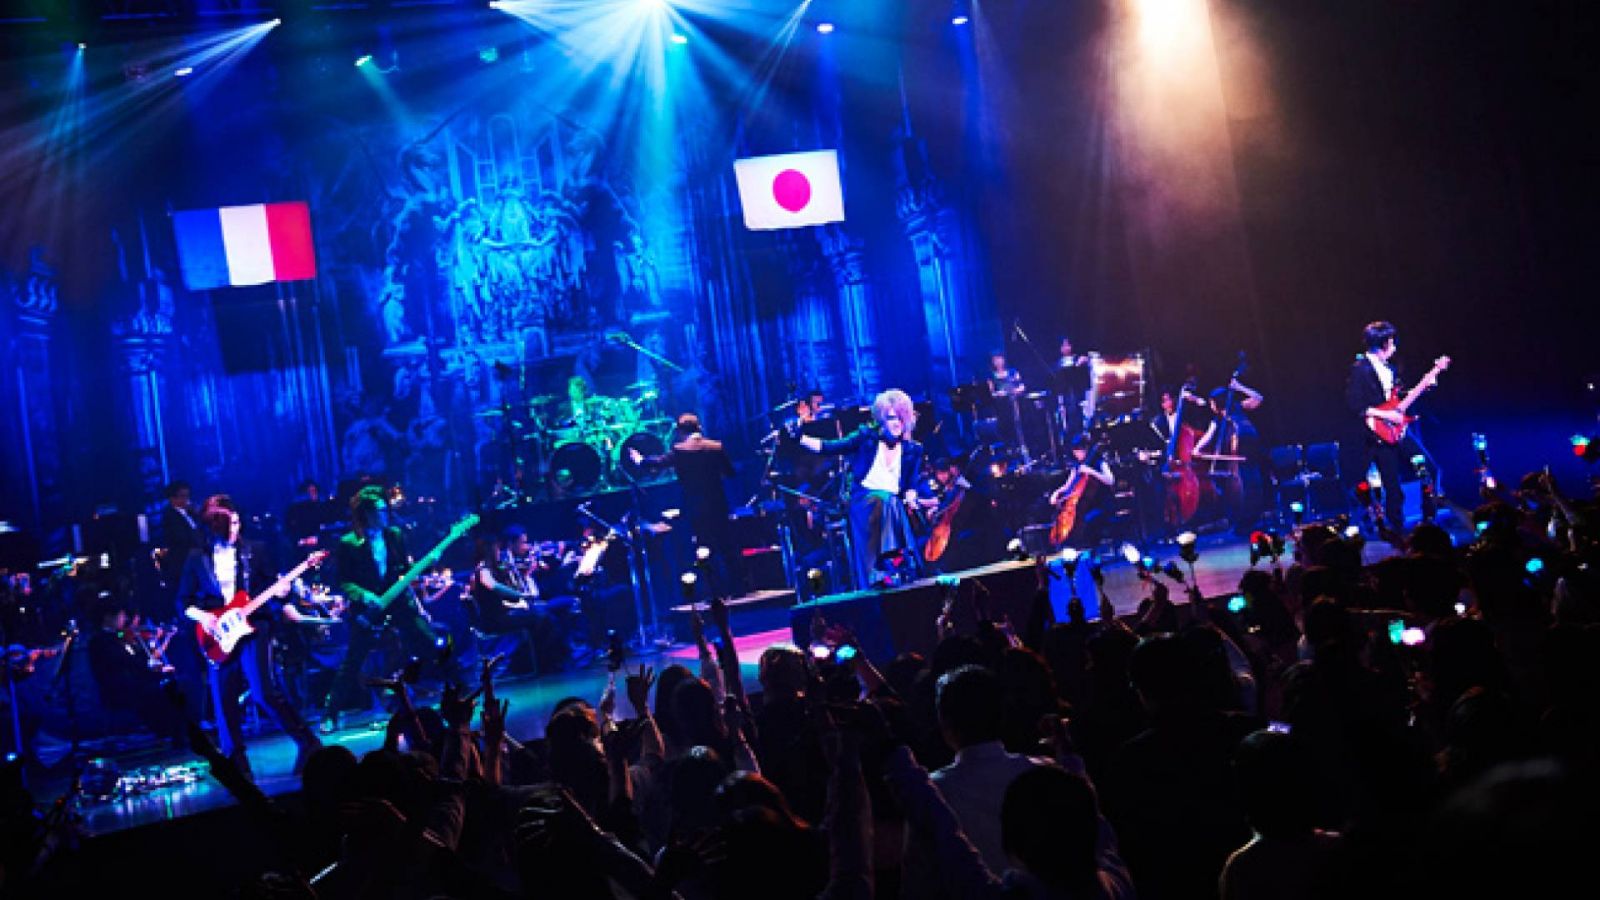 KAMIJOlta uusi livetaltiointi - konsertissa esiintyi yli 40-jäseninen orkesteri © KEIKO TANABE (TAMARUYA Co.,Ltd)